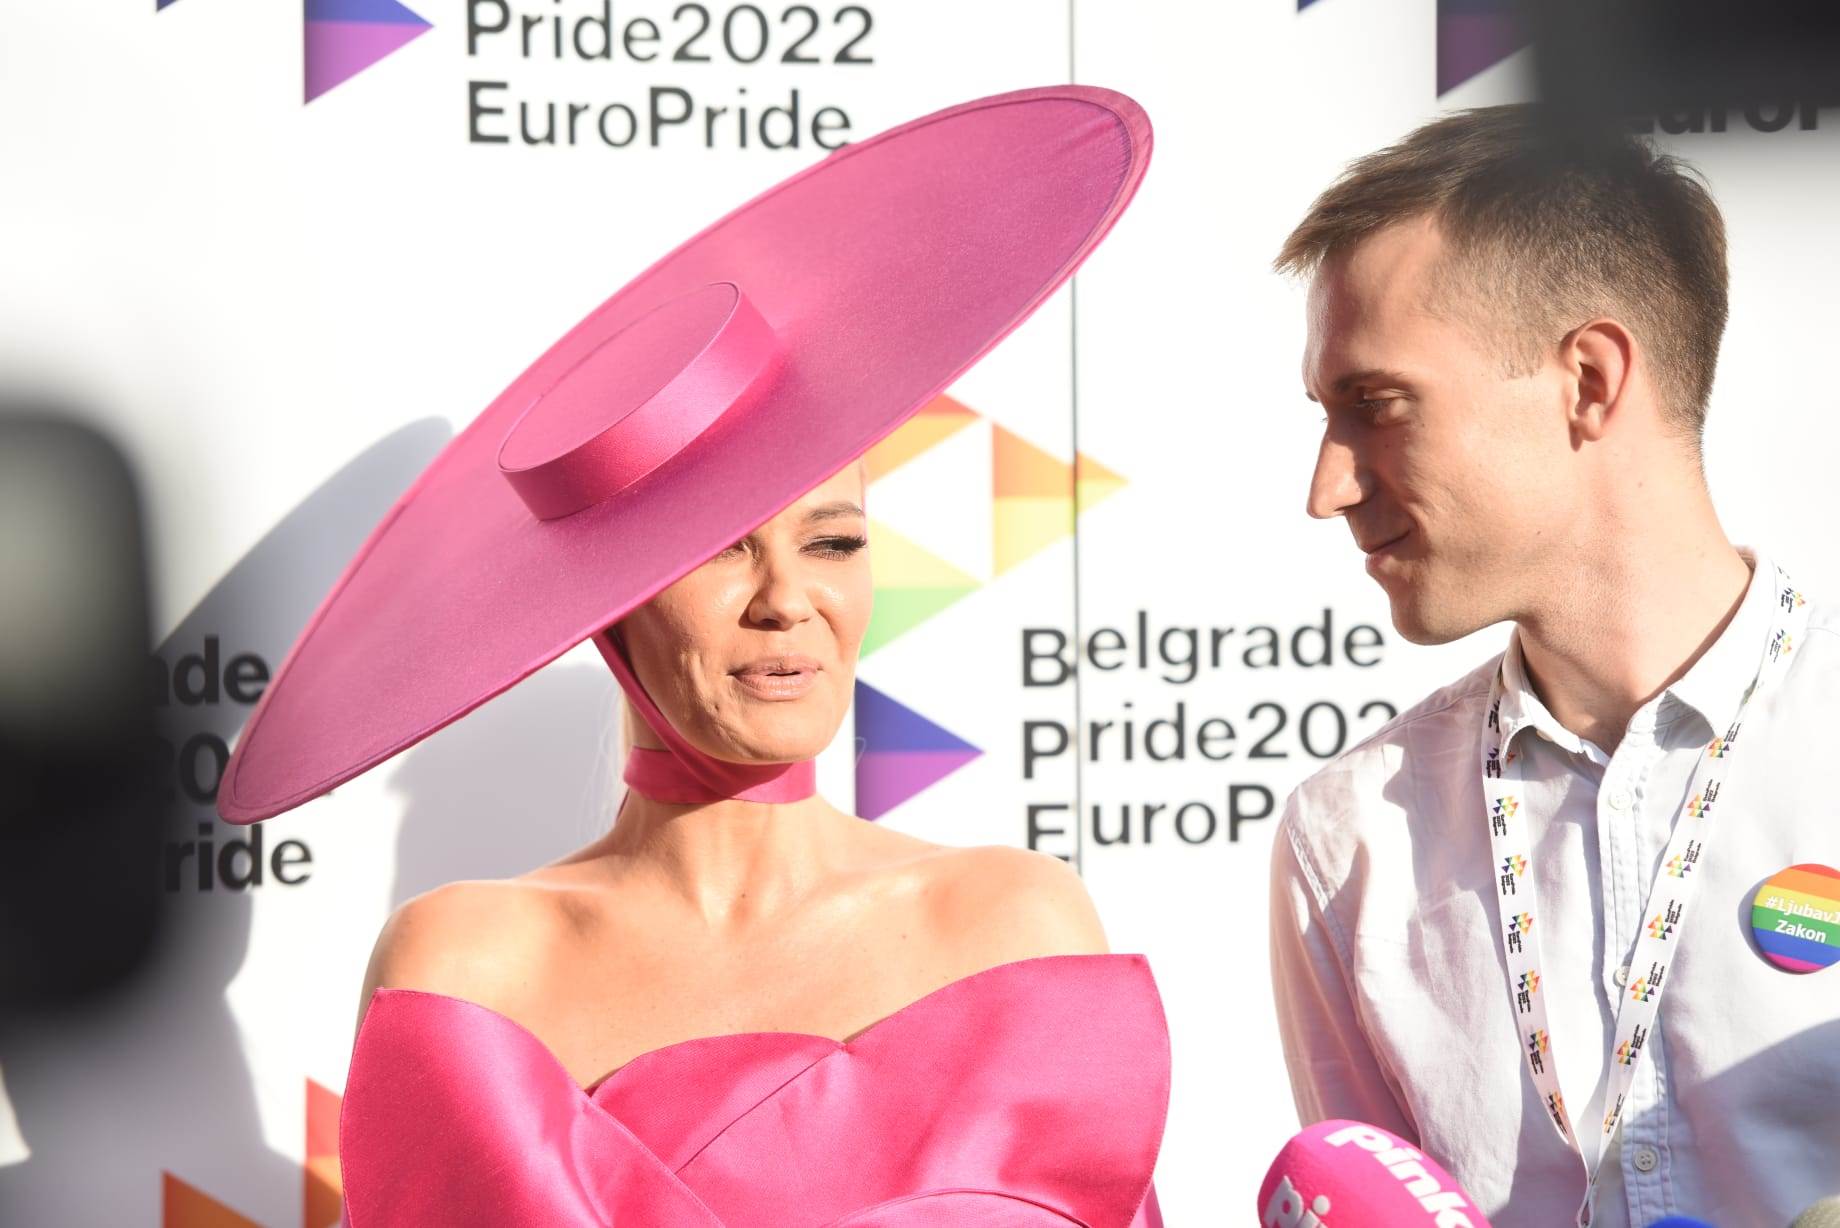  Nataša Bekvalac na Prajdu rekla da je deo gej populacije 